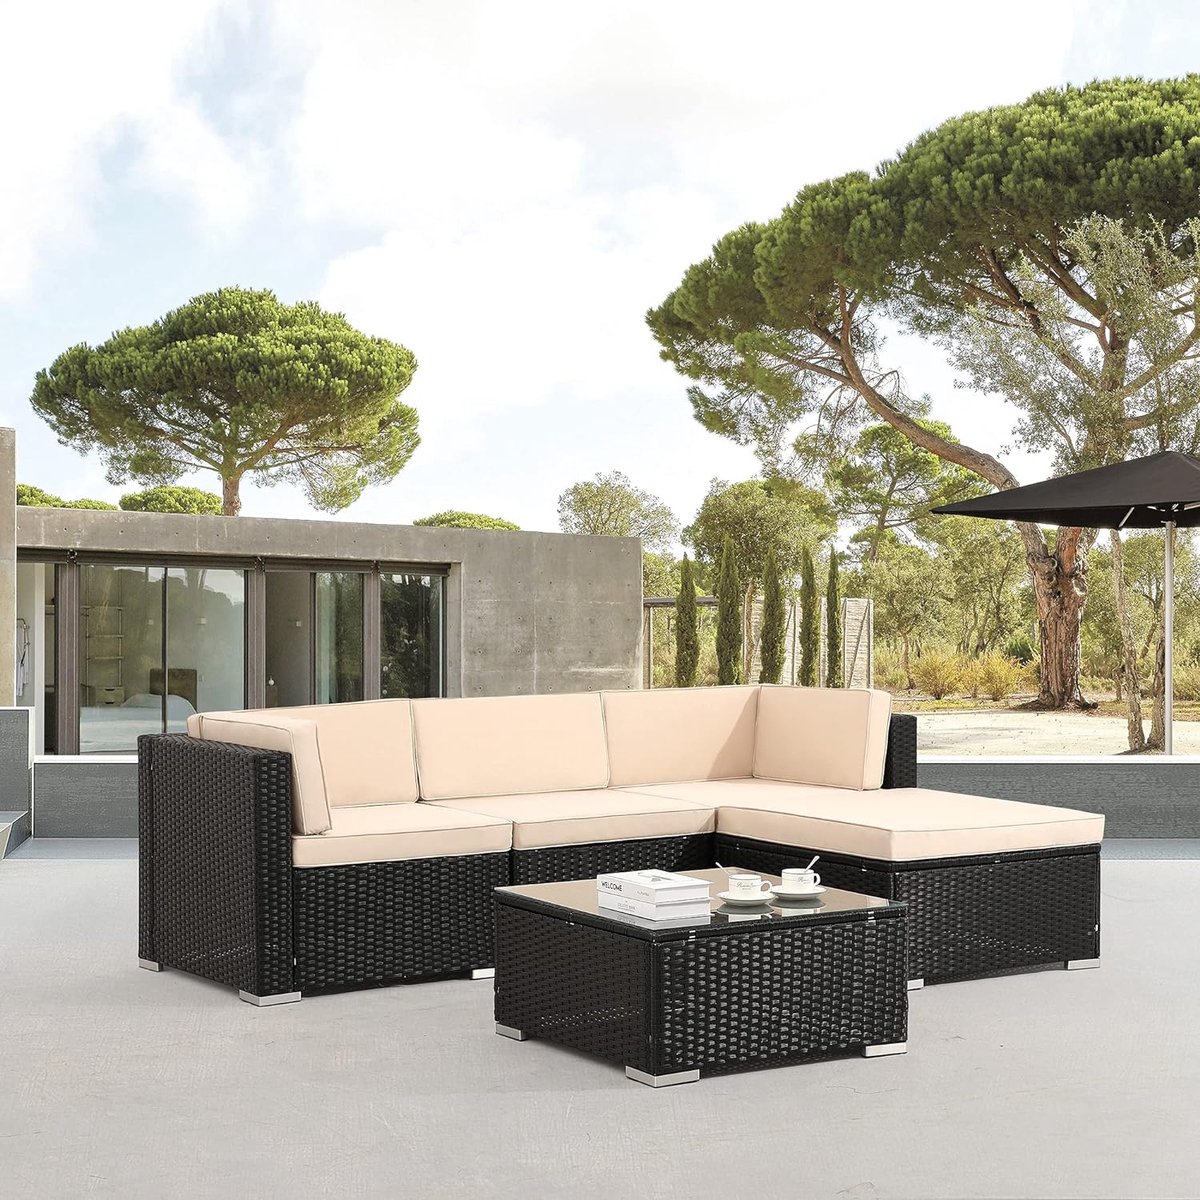 Arebos Poly rotan tuinmeubelen Lounge Palma | incl. zitkussen | 4 personen | UV-bestendig polyrotan vlechtwerk | tafel met glasplaat | vrij te combineren | zwart